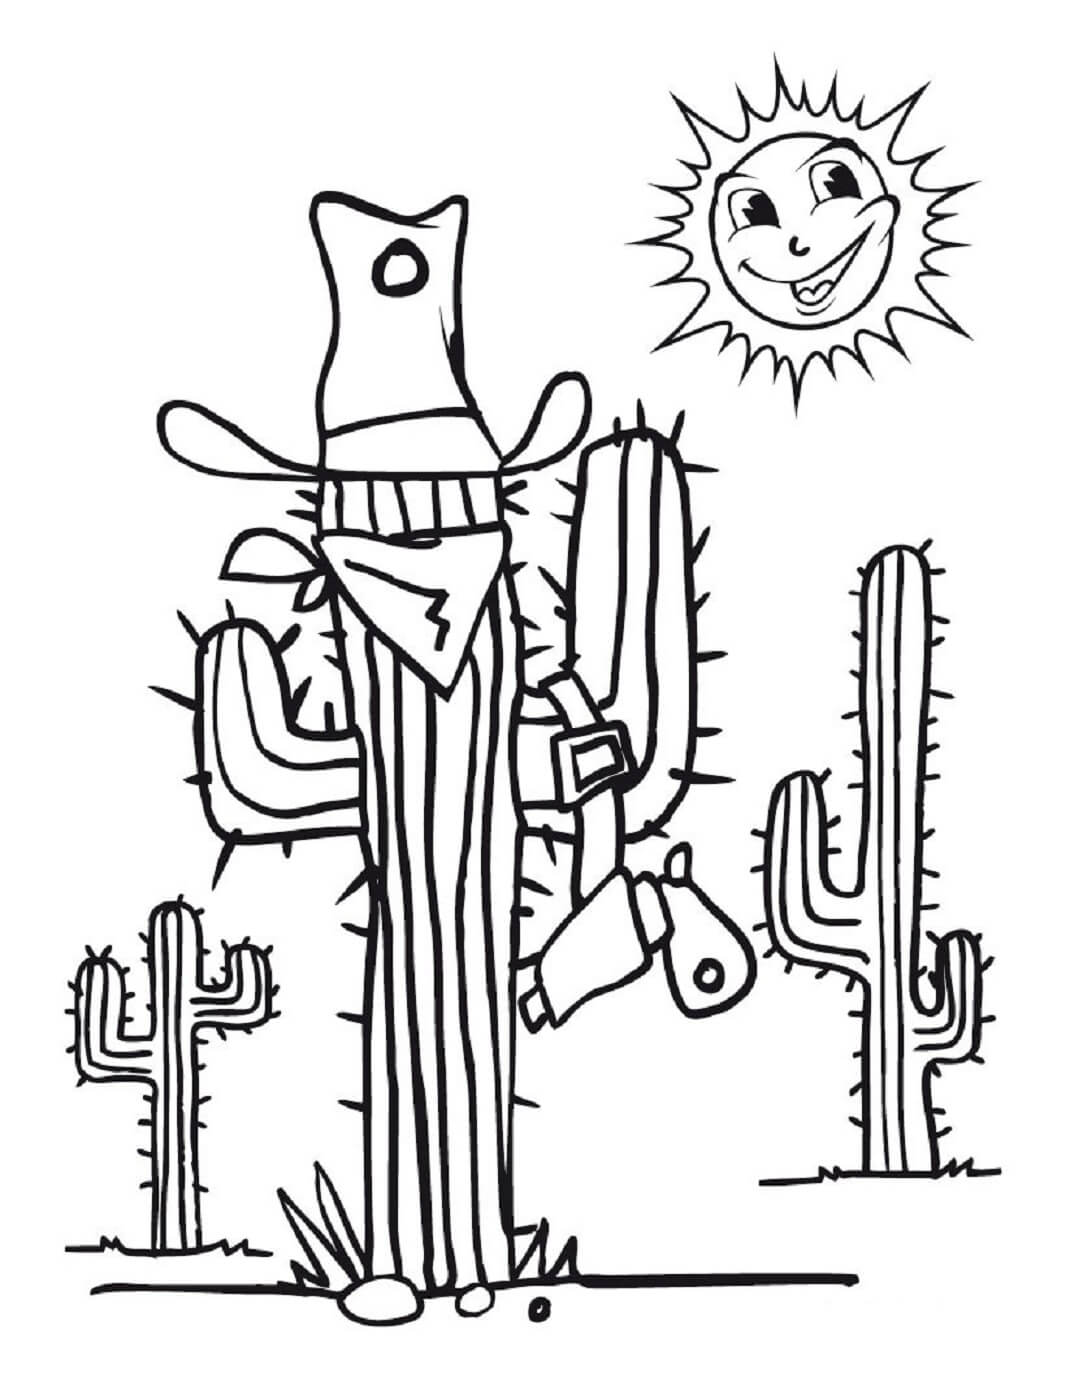 Kaktus-Cowboy und Sonne